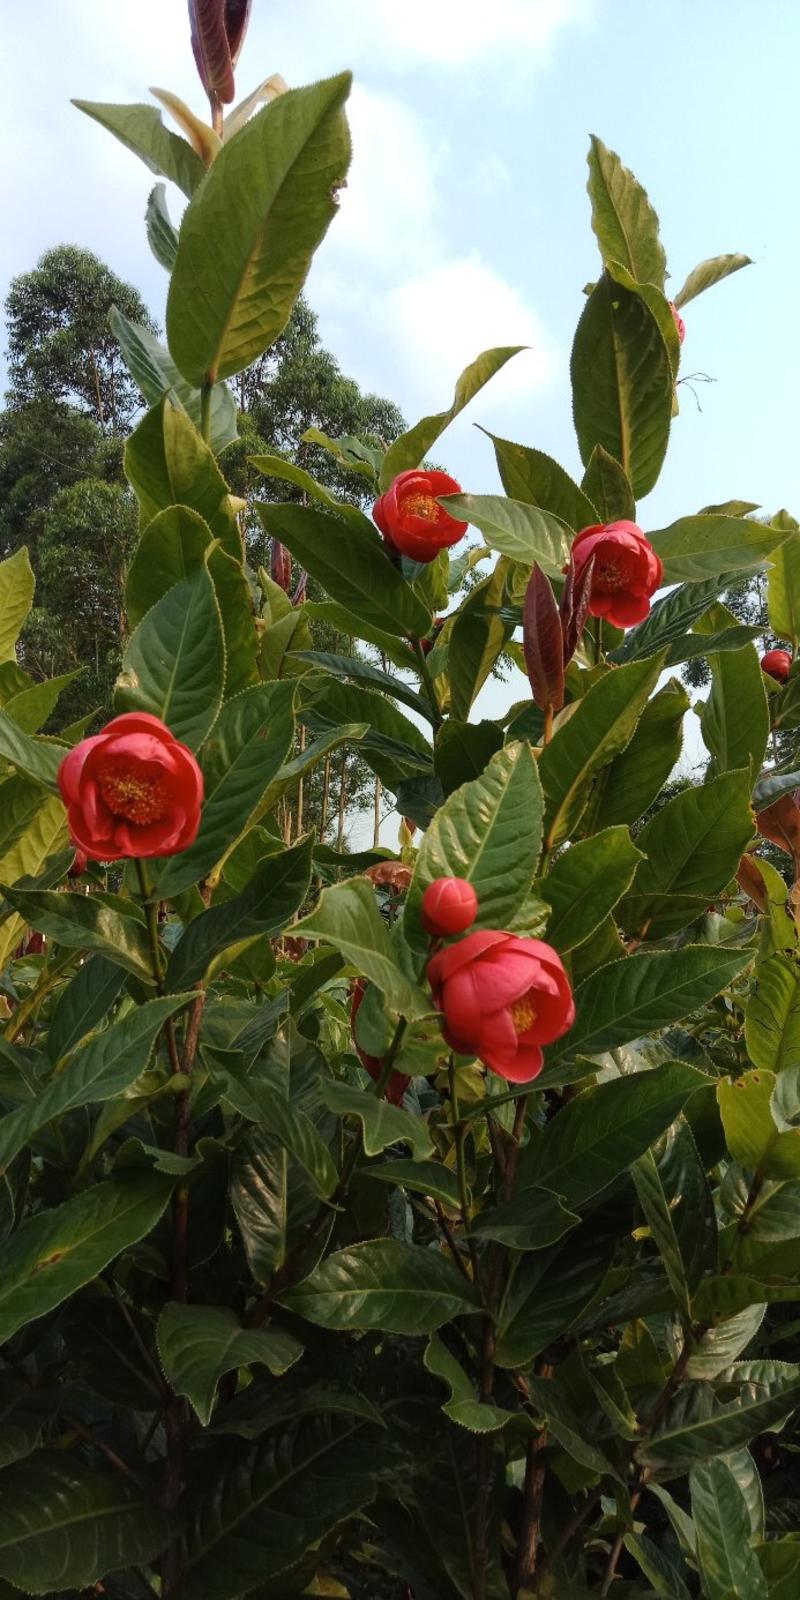 越南抱径茶花、花期夏季至秋季